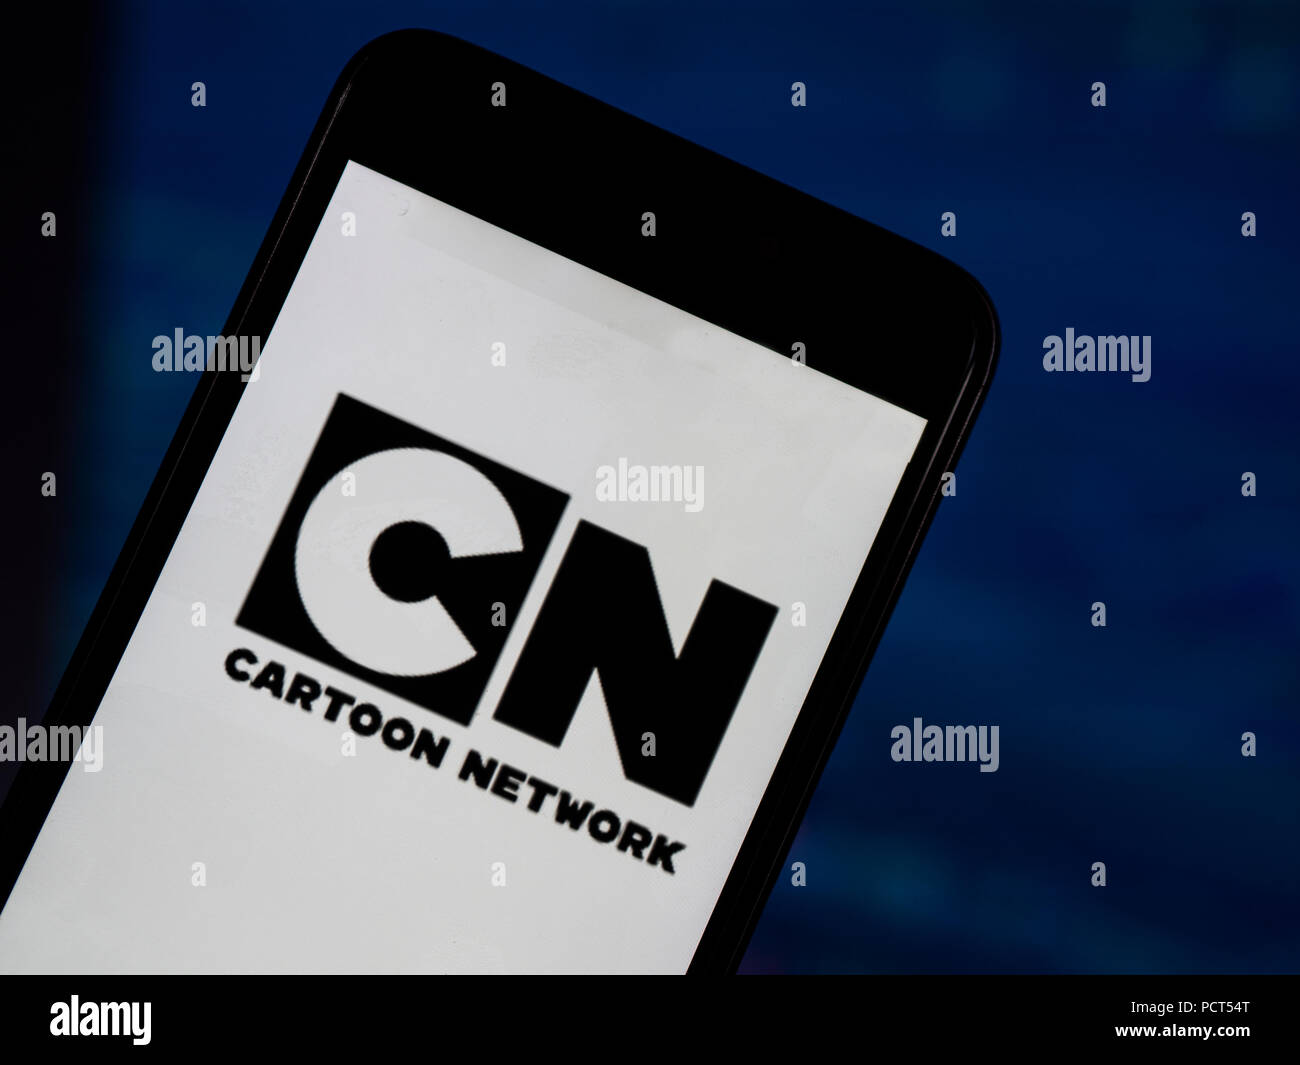 Kiew, Ukraine - August 4, 2018: Cartoon Network Anwendung gesehen auf einem Smartphone mit dem Hintergrund einer Börse shedle. Cartoon Network) ist eine US-amerikanische Pay-TV-Kanal. Stockfoto